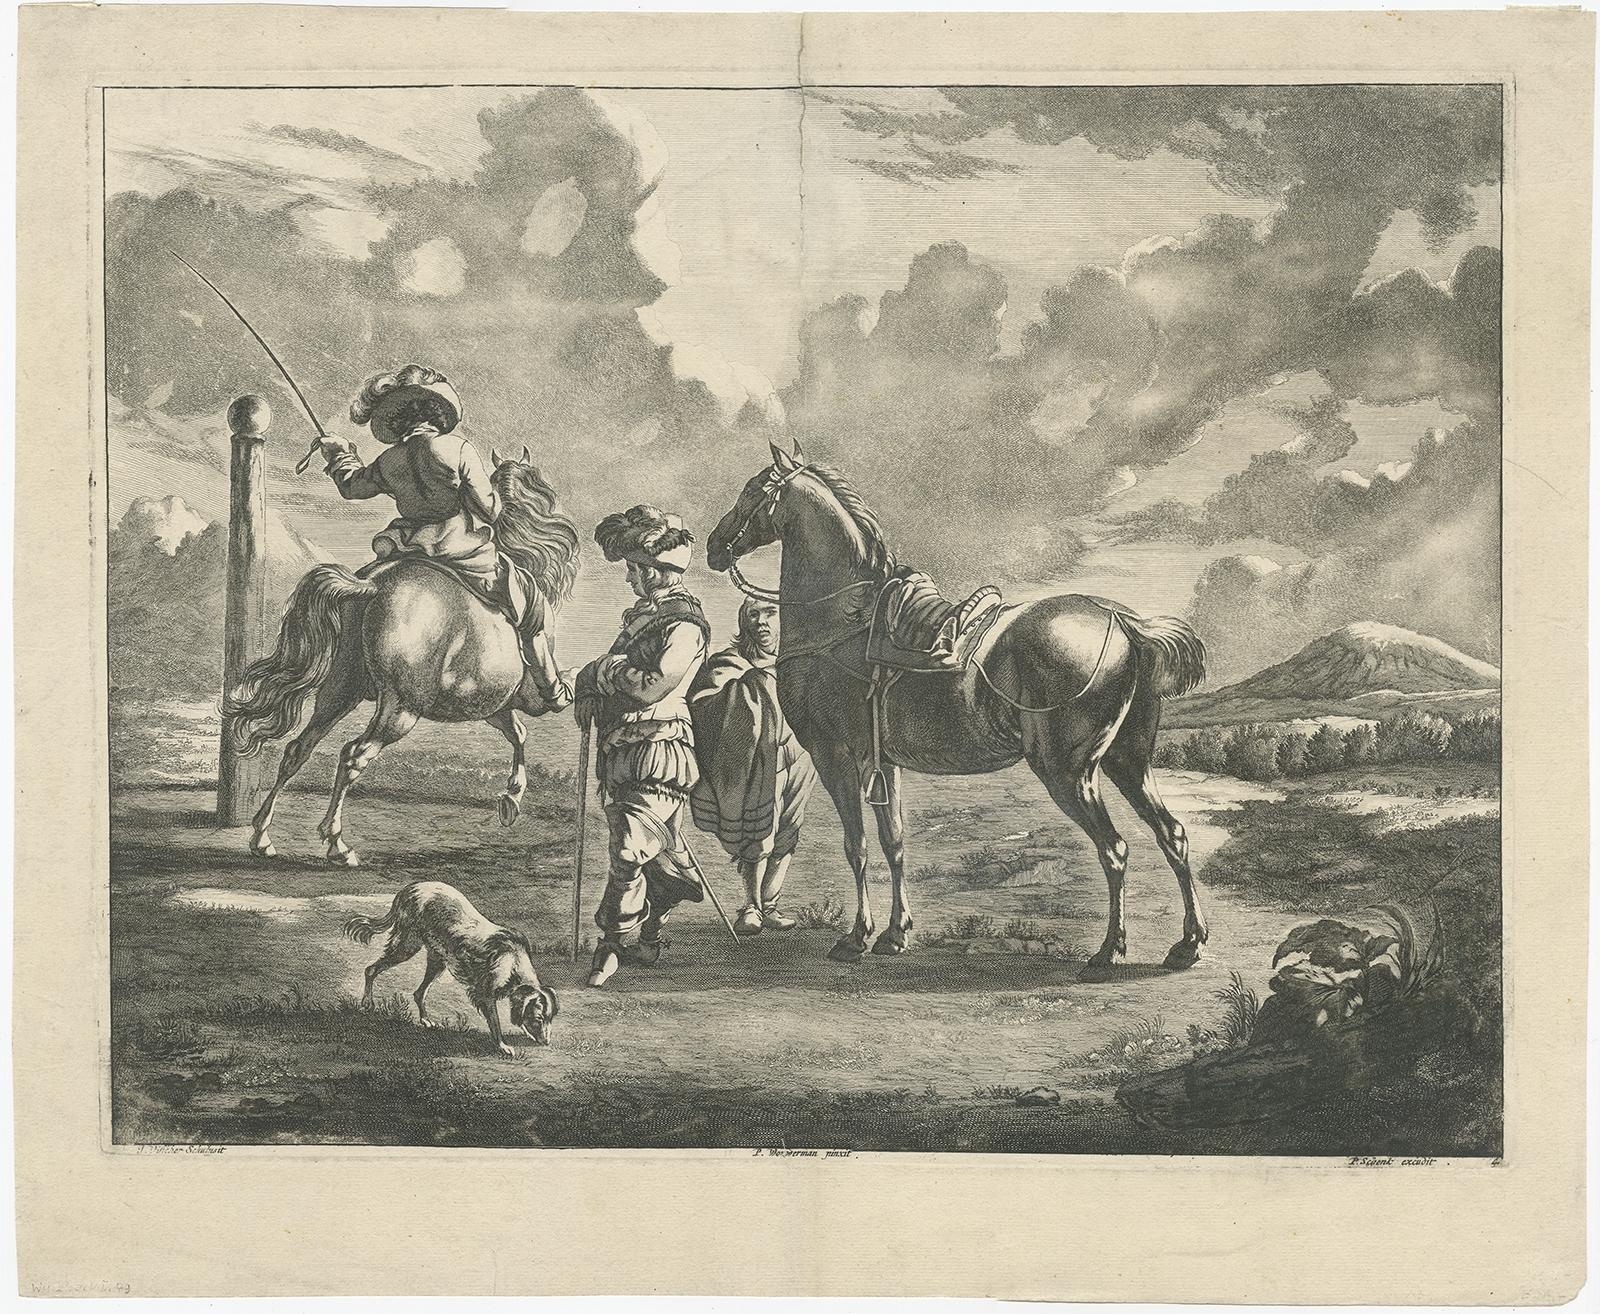 Impression ancienne d'un paysage avec deux chevaux et des cavaliers. 

Réalisé d'après un tableau de Philips Wouwerman. Source inconnue, à déterminer. 

Artistes et graveurs : Gravé par J. Visscher d'après Philips Wouwerman (1619-1668) était un